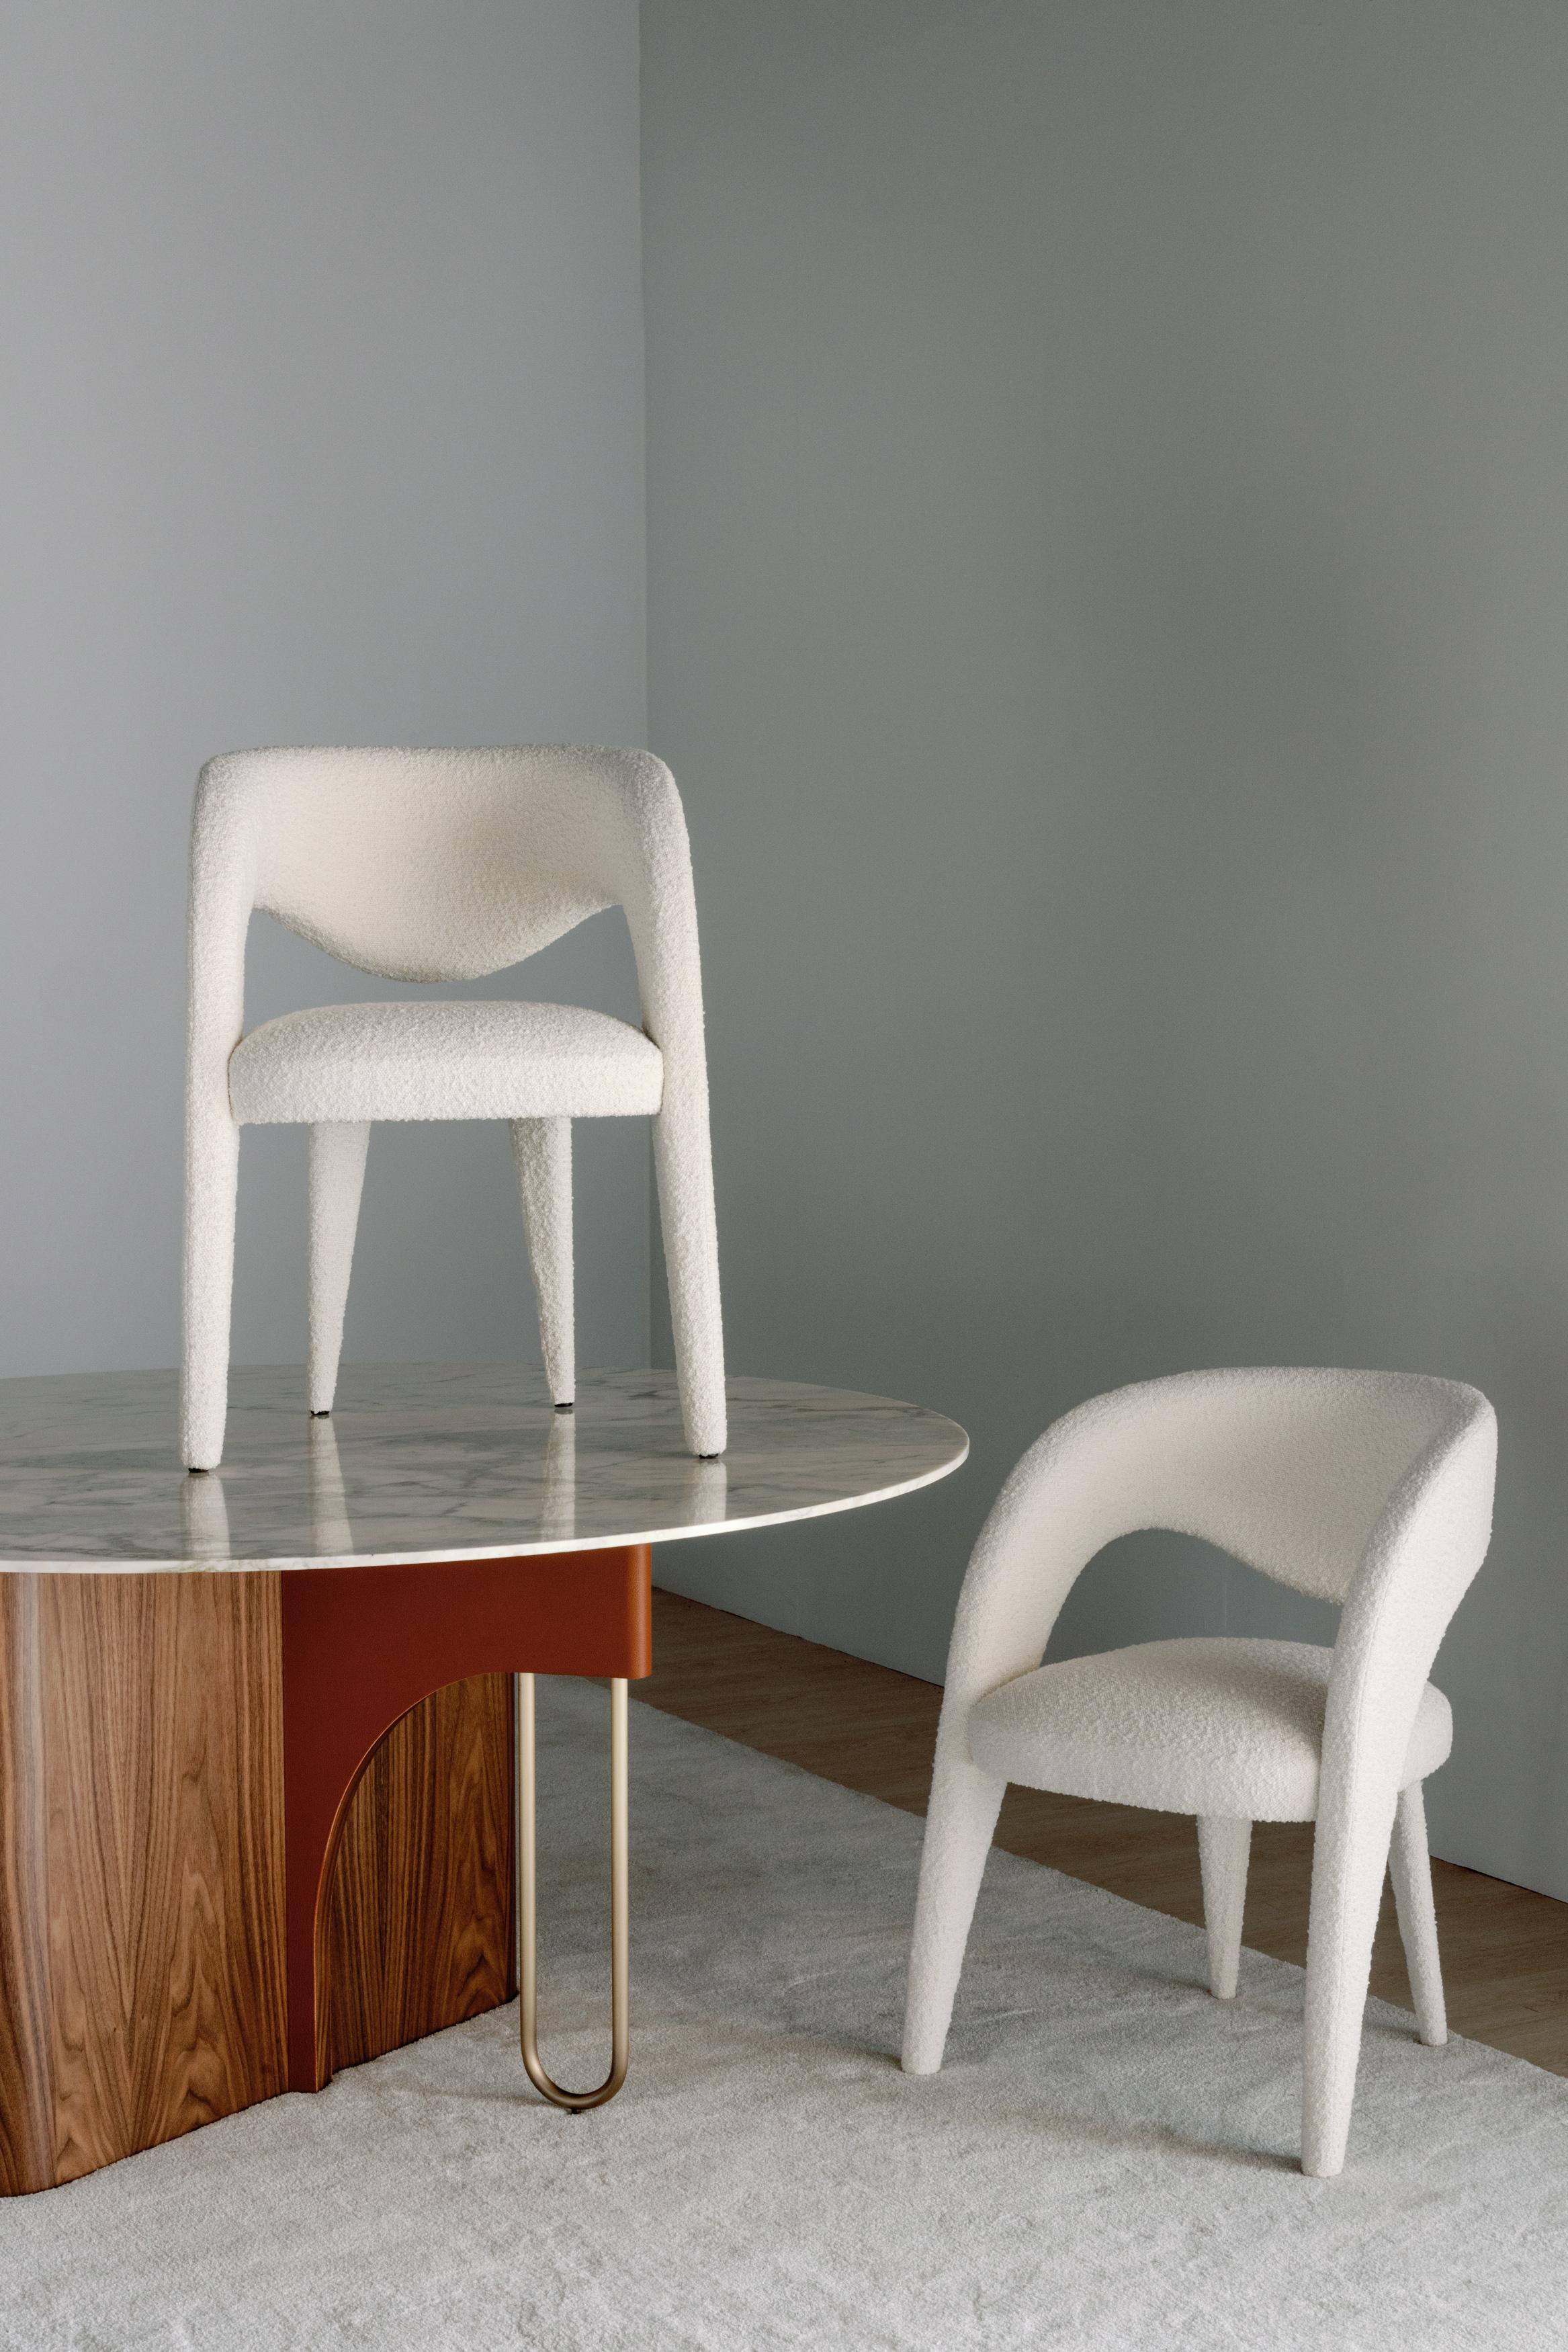 Laurence Chair, Collection'S Contemporary, handgefertigt in Portugal - Europa von Greenapple.

Der von Rute Martins für die Collection'S Contemporary entworfene Bouclé-Esszimmerstuhl Laurence wurde mit der künstlerischen Absicht geschaffen, das Bild